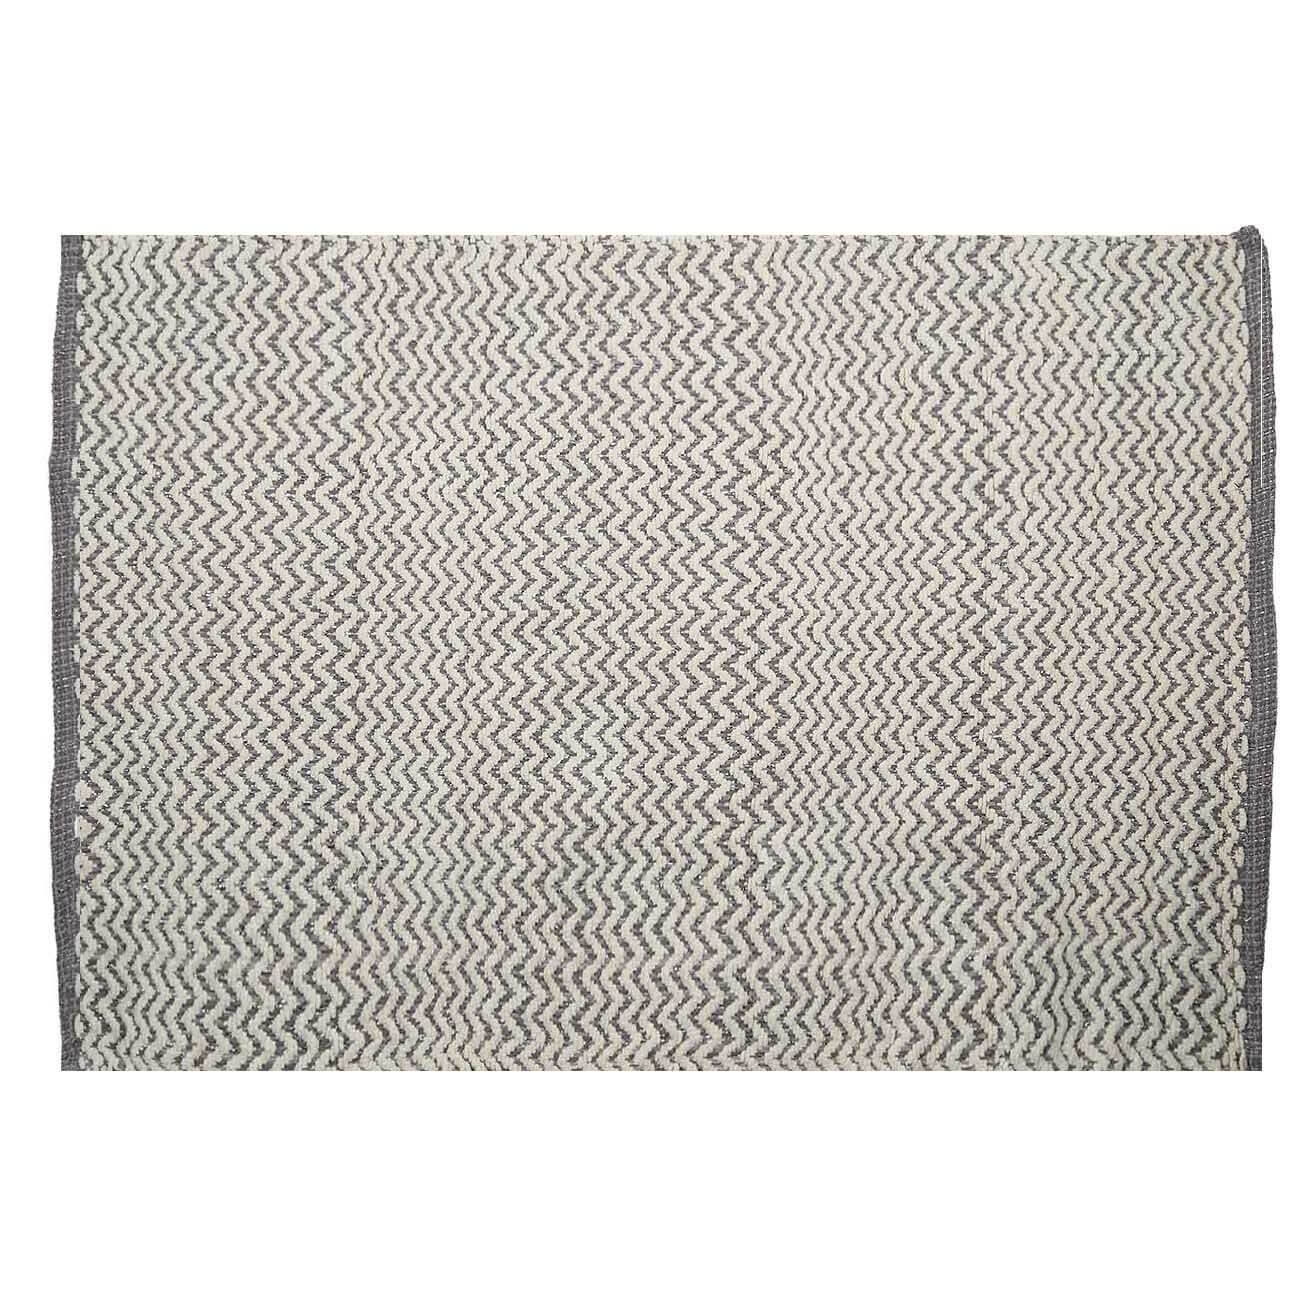 Коврик, 65х100 см, хлопок, бело-серый, Зигзаги с люрексом, Shiny threads изображение № 1